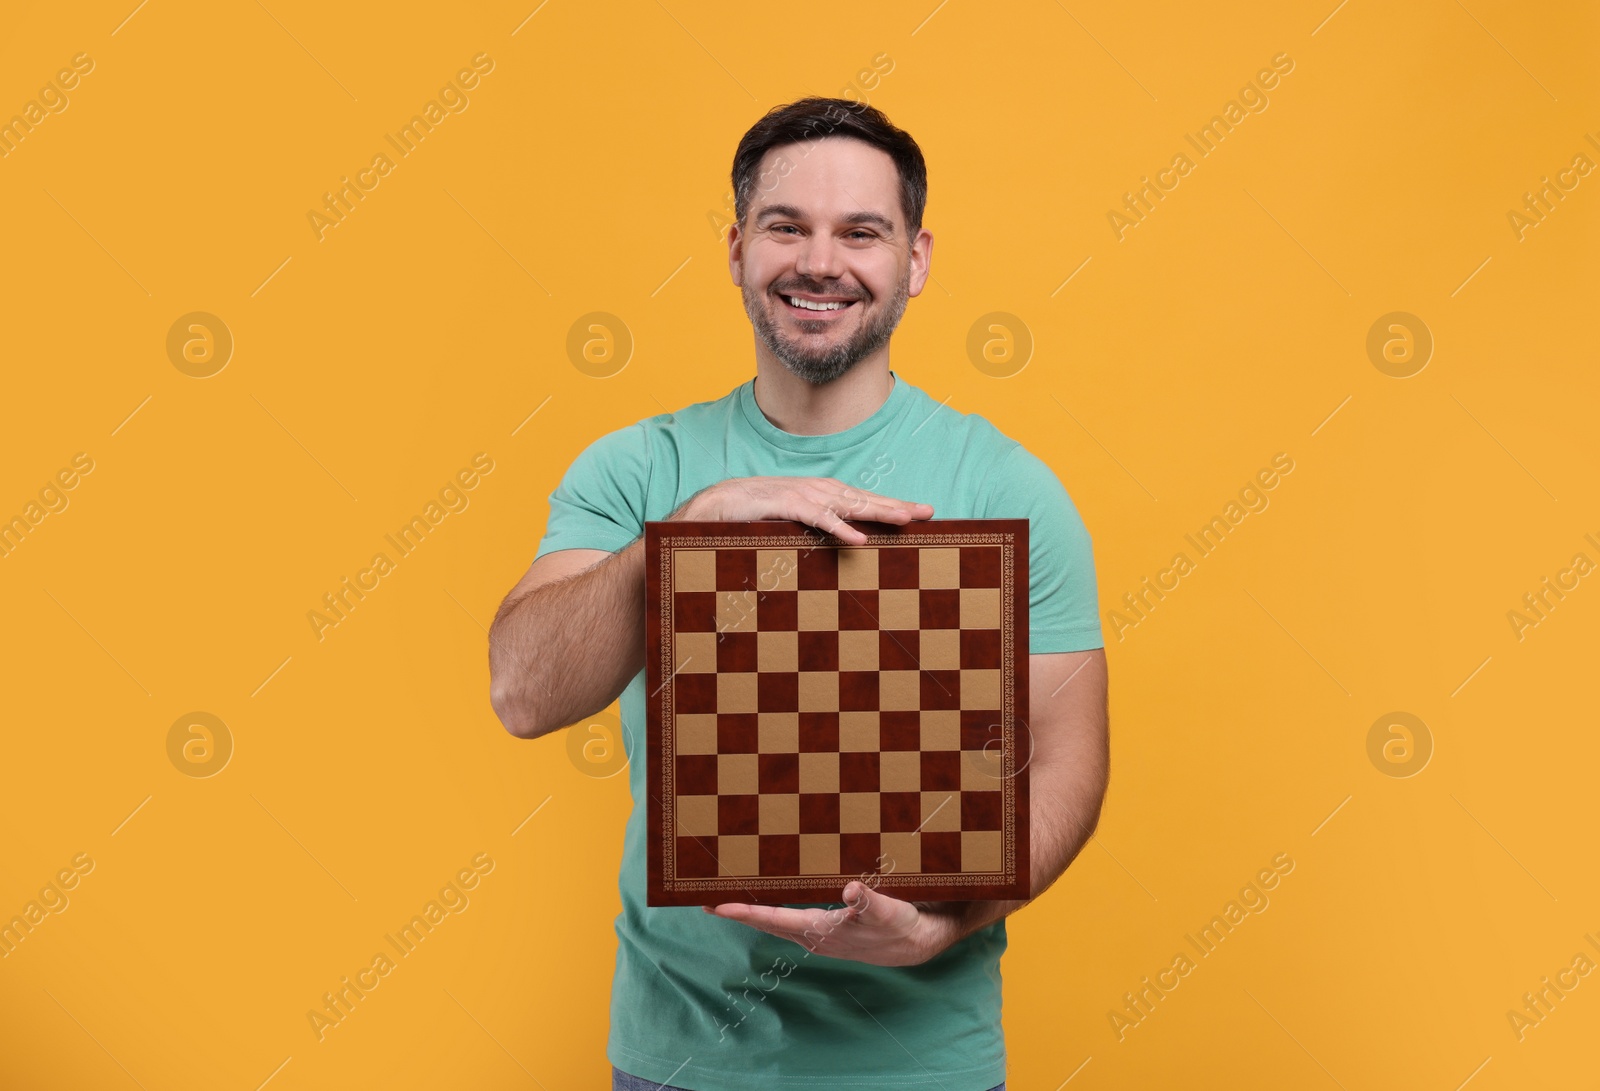 Photo of Smiling man holding chessboard on orange background